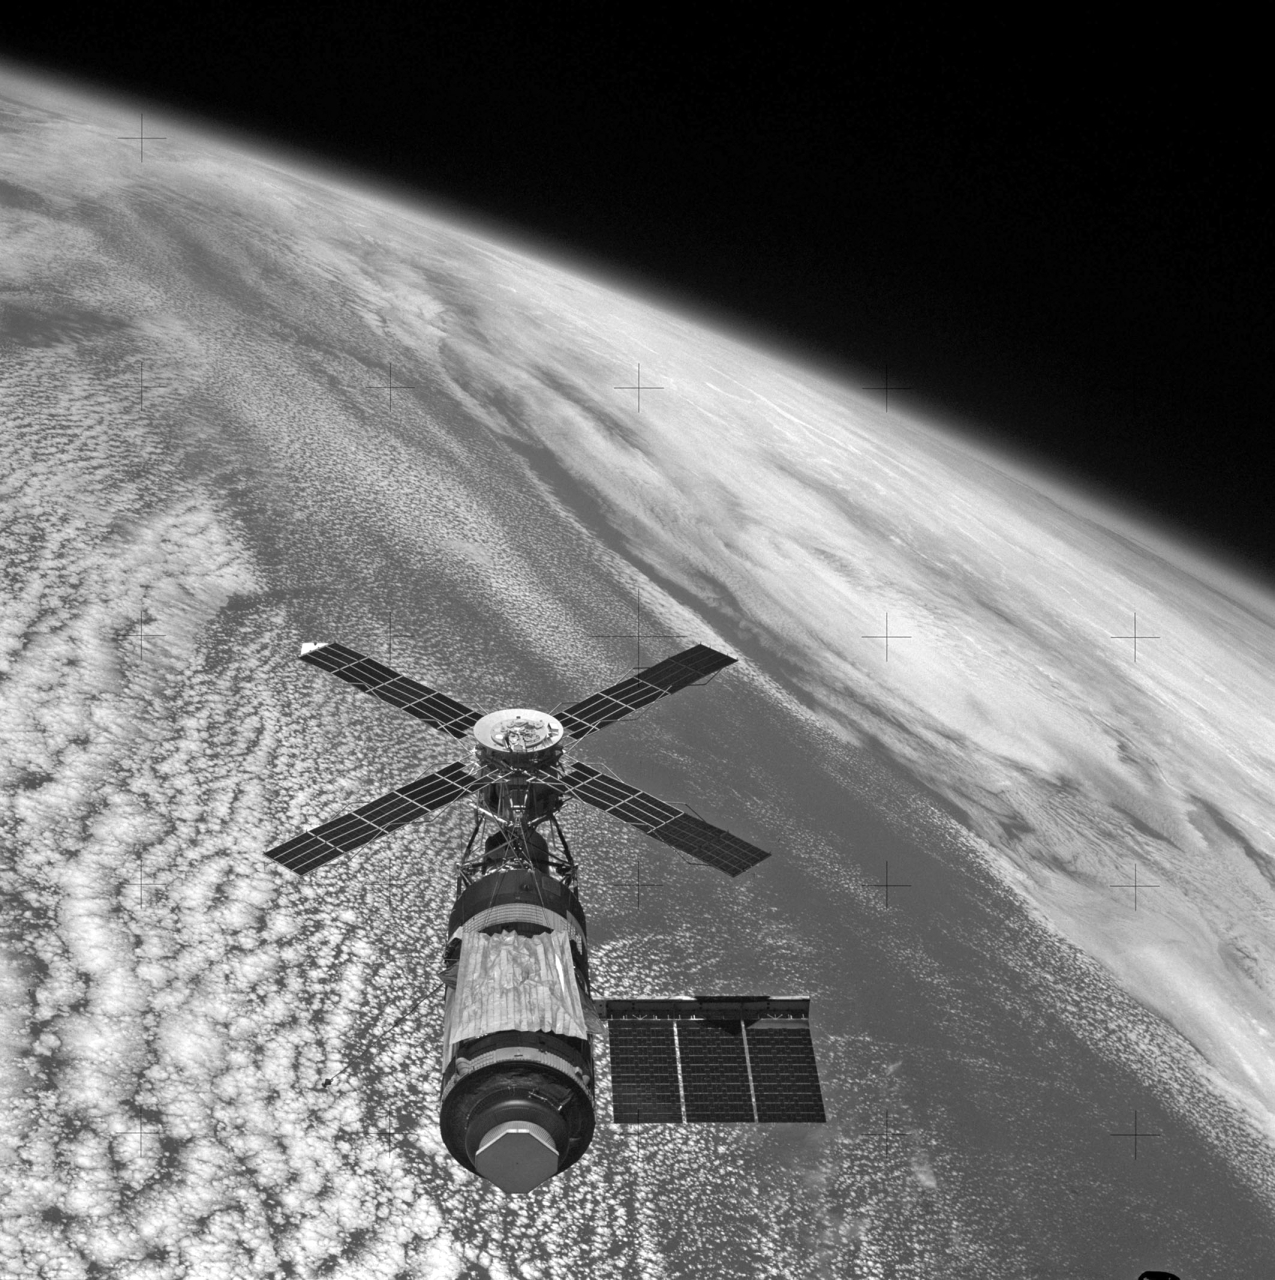 الصورة : 1973 ضمن برنامج سكاي لاب، ناسا تطلق سكاي لاب 4 بطاقم من ثلاثة رواد فضاء من مدينة كيب كانفرال لمهمة مدتها 84 يوماً